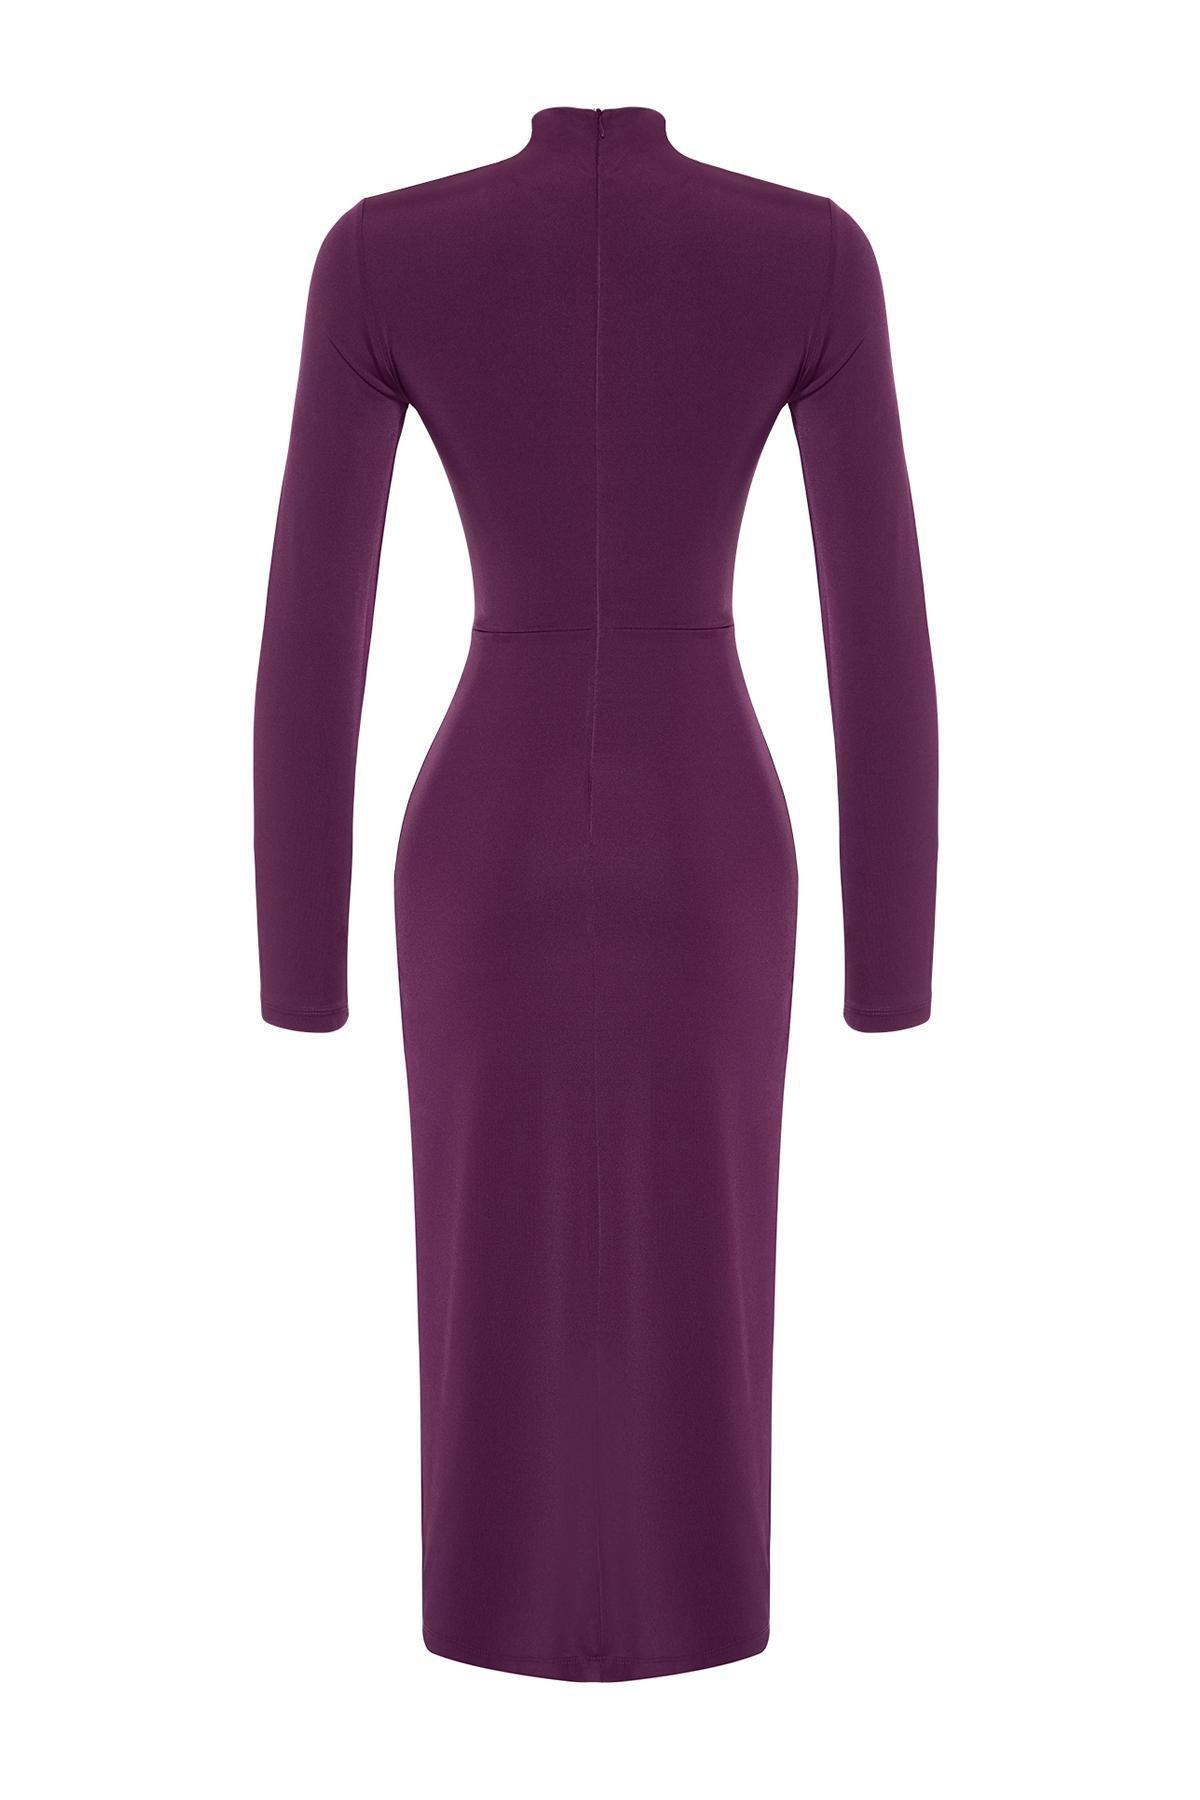 Trendyol - Purple Fitted Occasionwear Dress